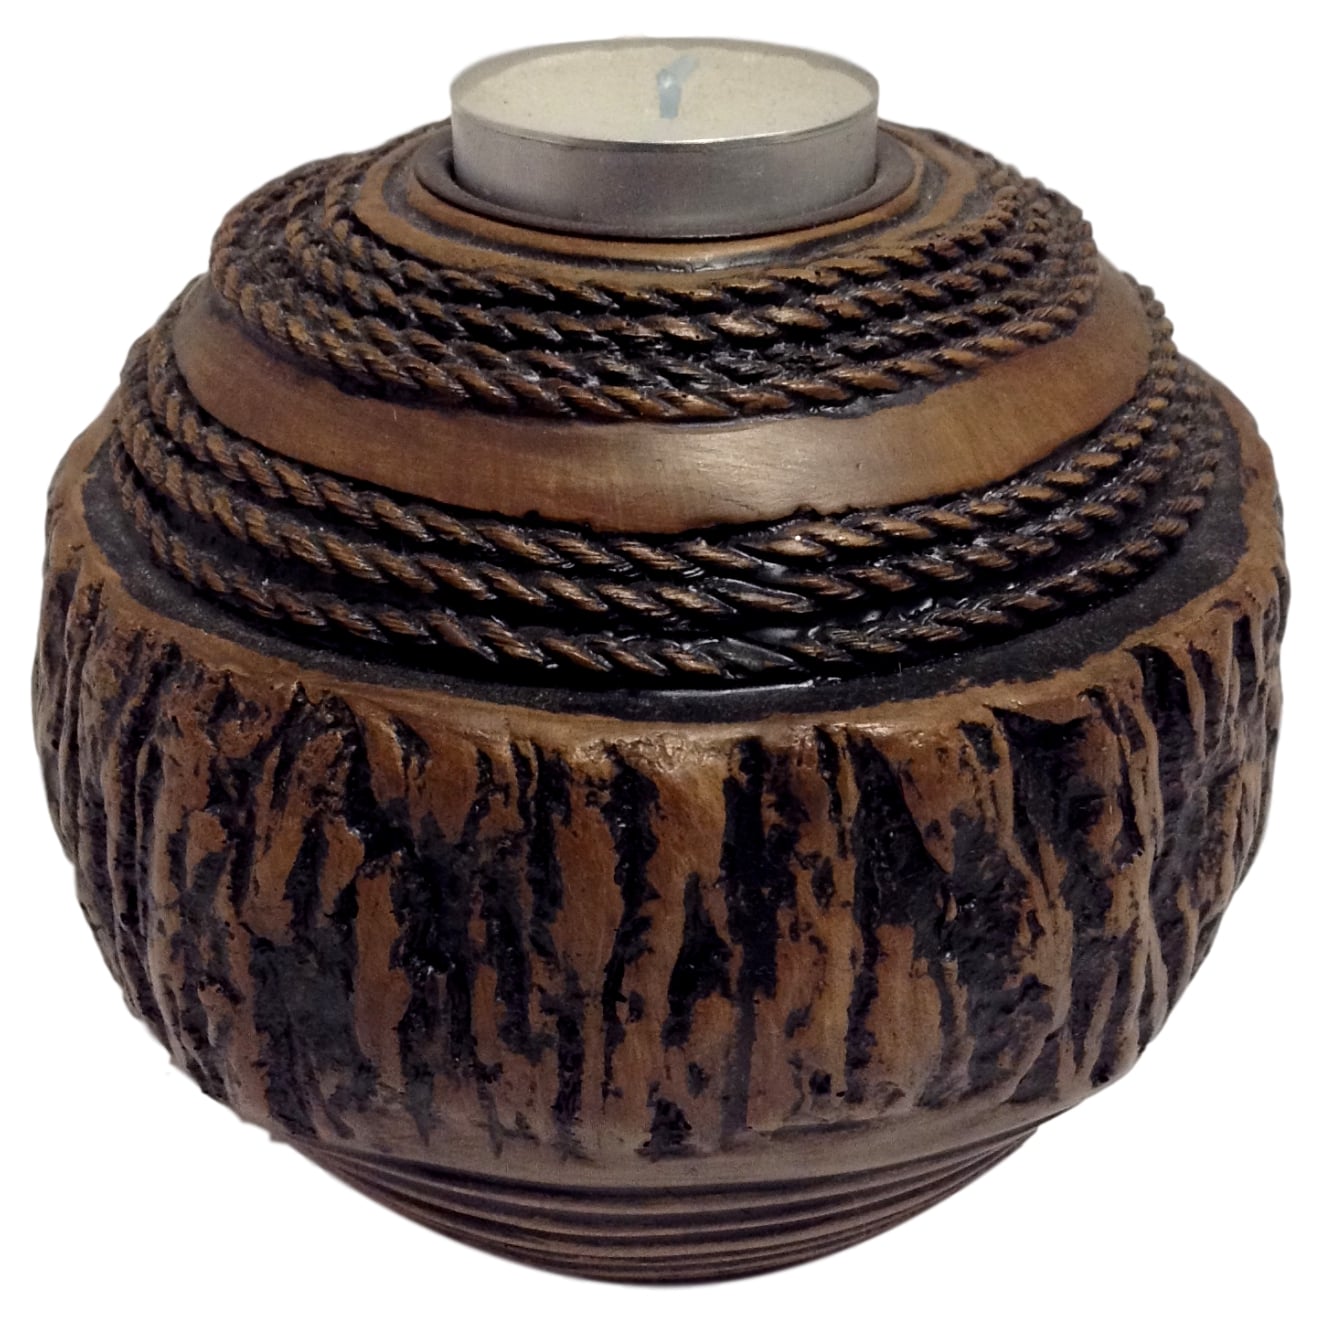 Carved "Wood" Candleholder